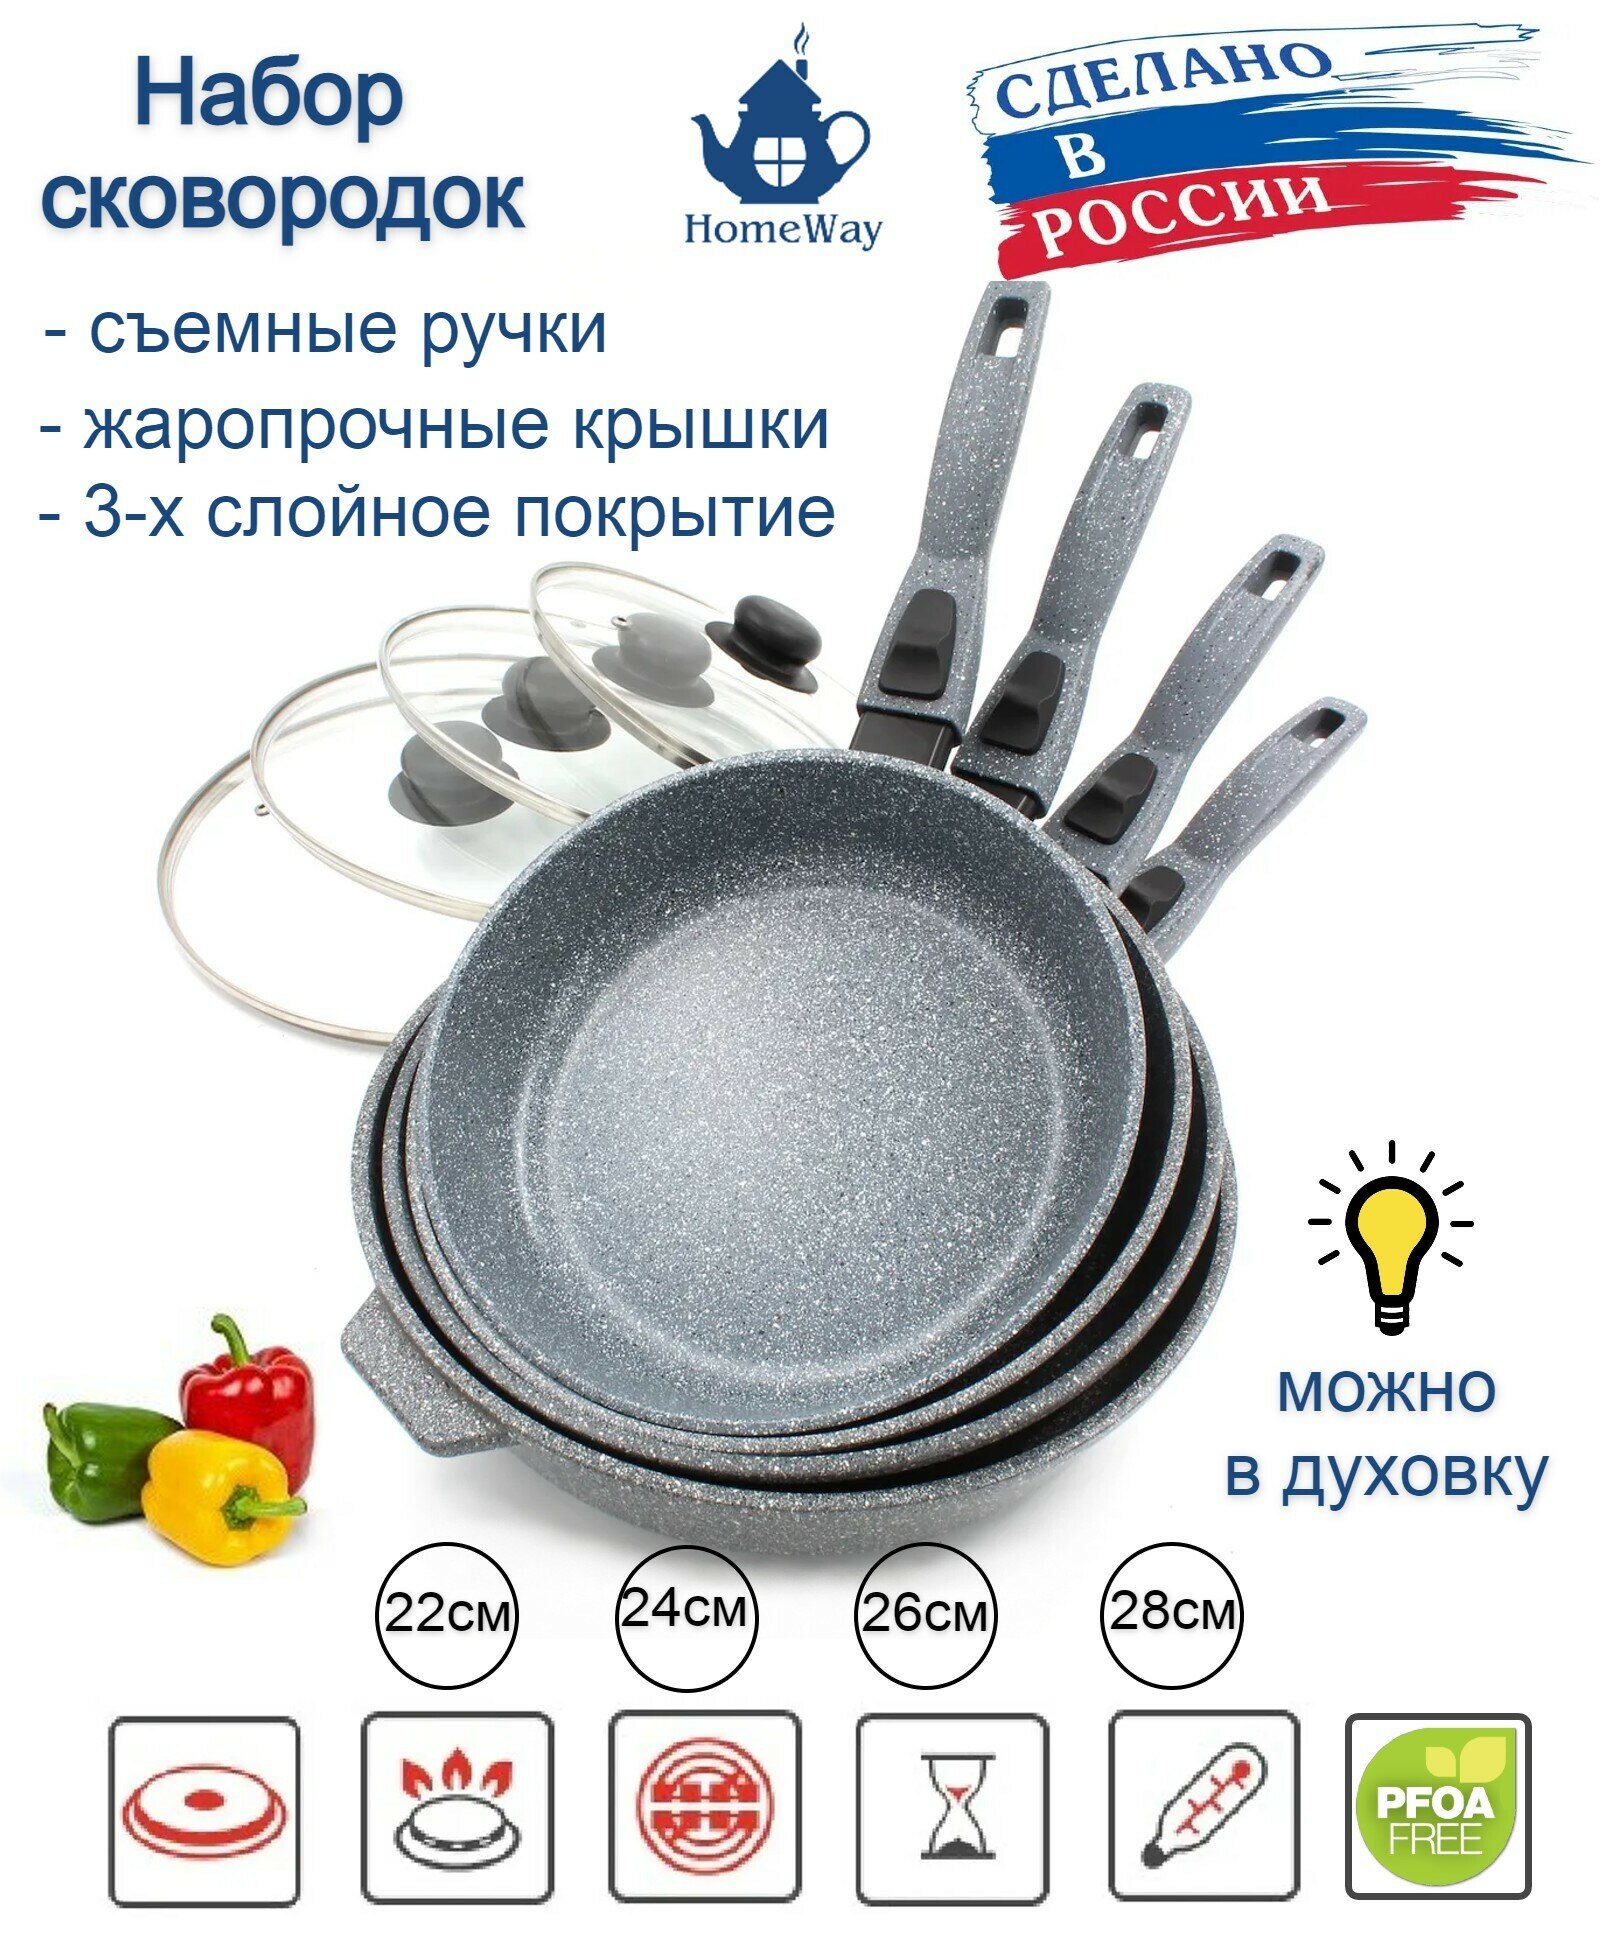 Набор сковородок с крышками керамическое антипригарное покрытие 4шт.(22см/24см/26см/28см) съемные ручки Макси+ комплект. HomeWay